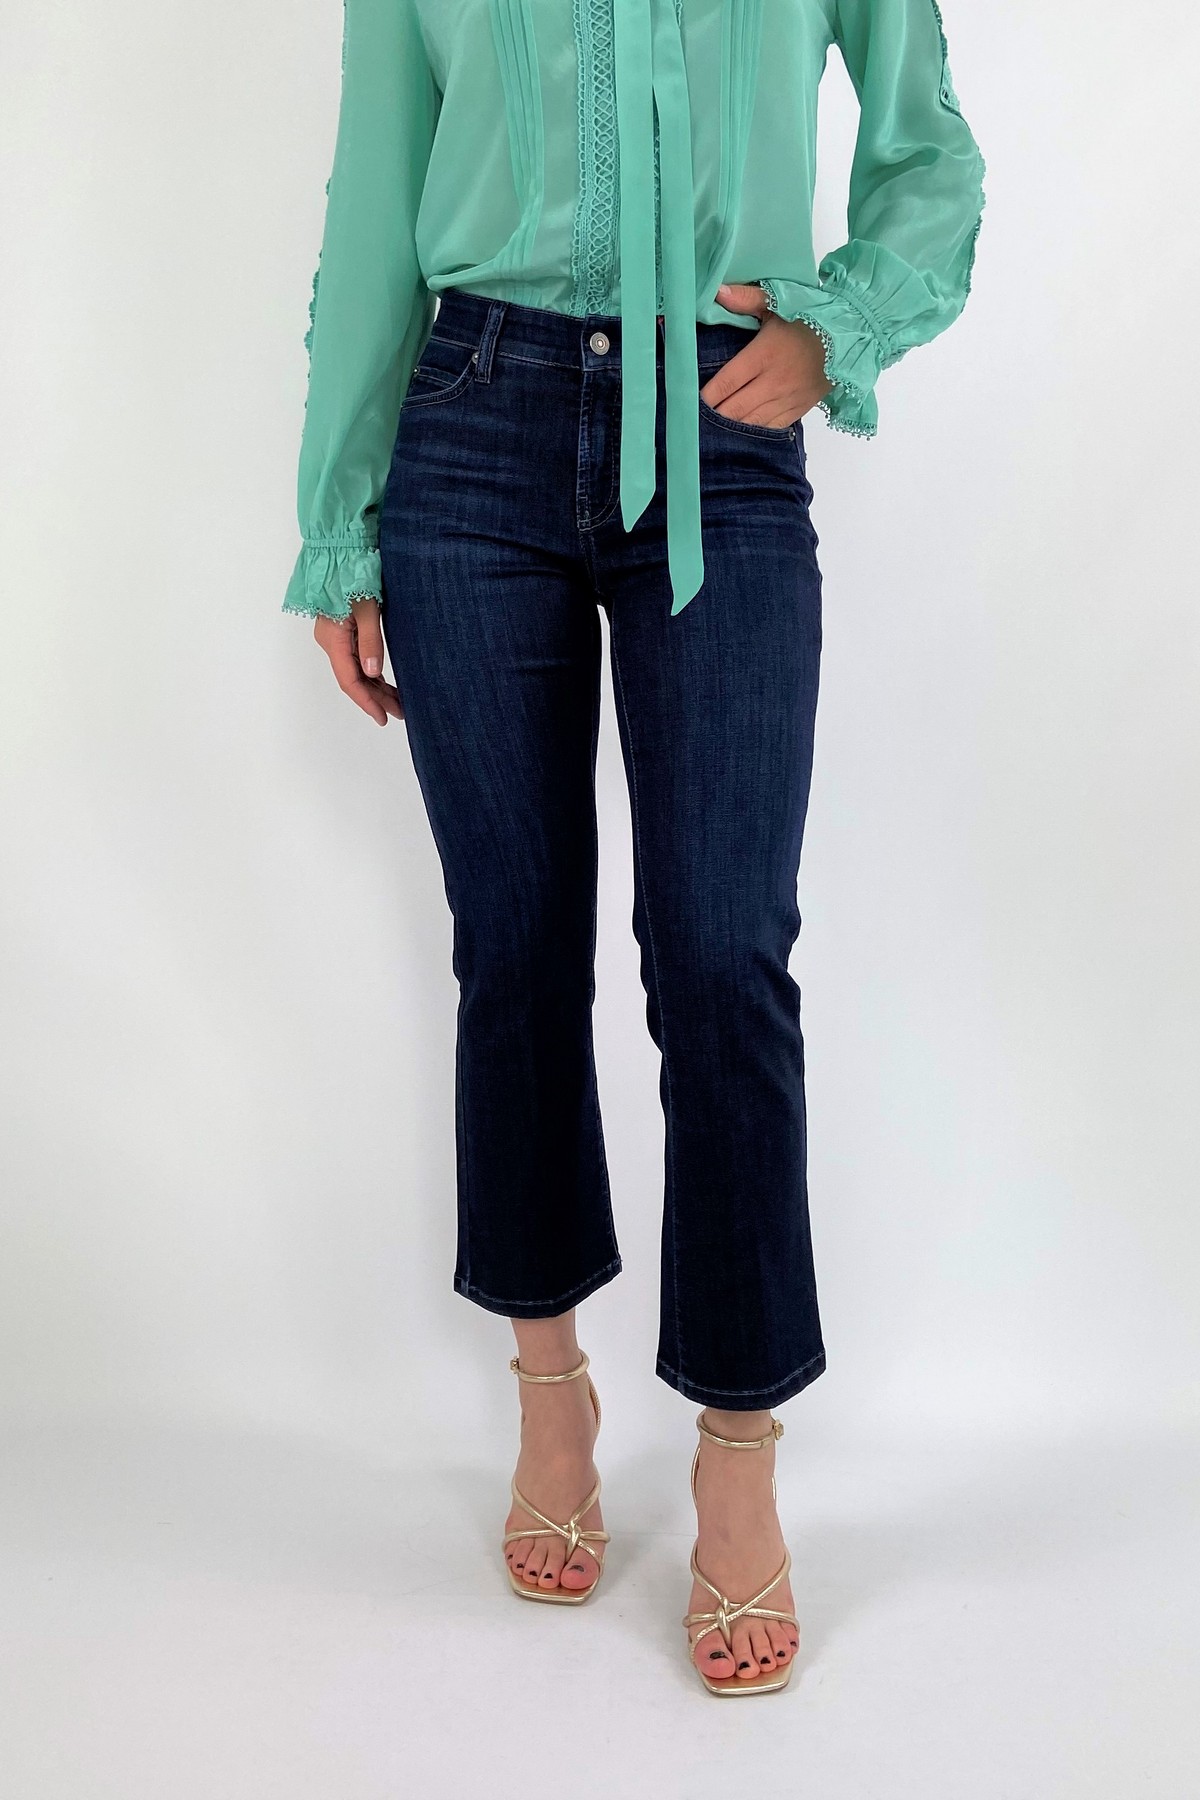 Broek jeans easy kick in de kleur donkerblauw van het merk Cambio